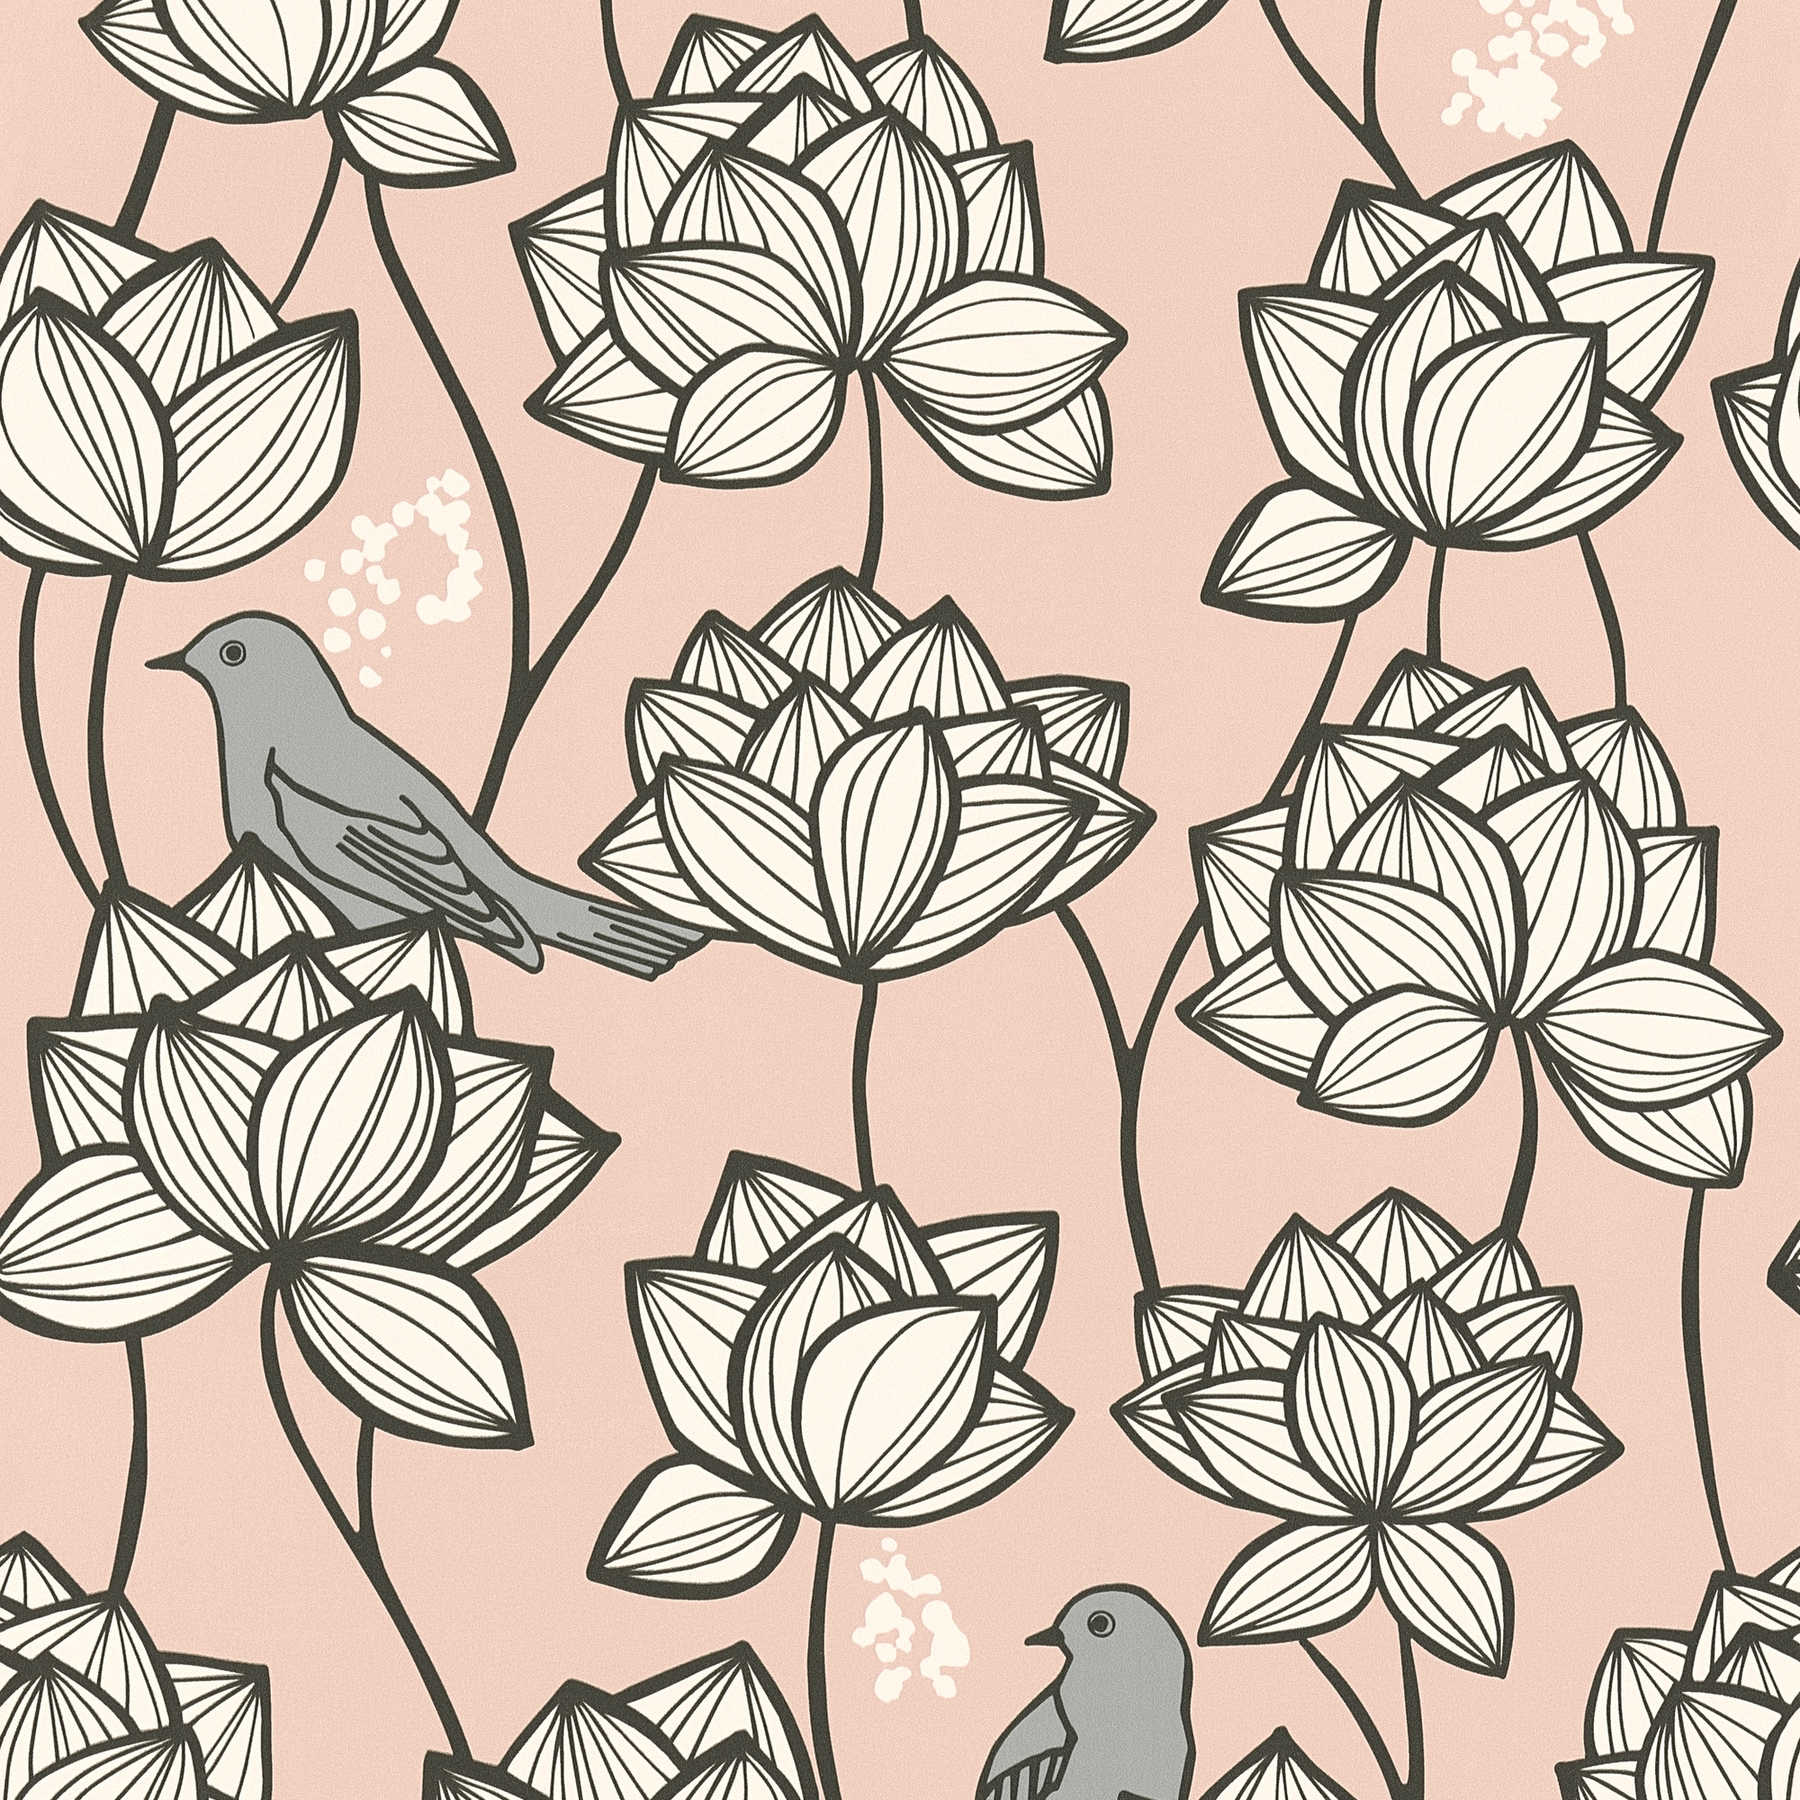 Vliestapete Blumen Ranken mit Vögeln im Line Art Stil – Grau, Rosa
